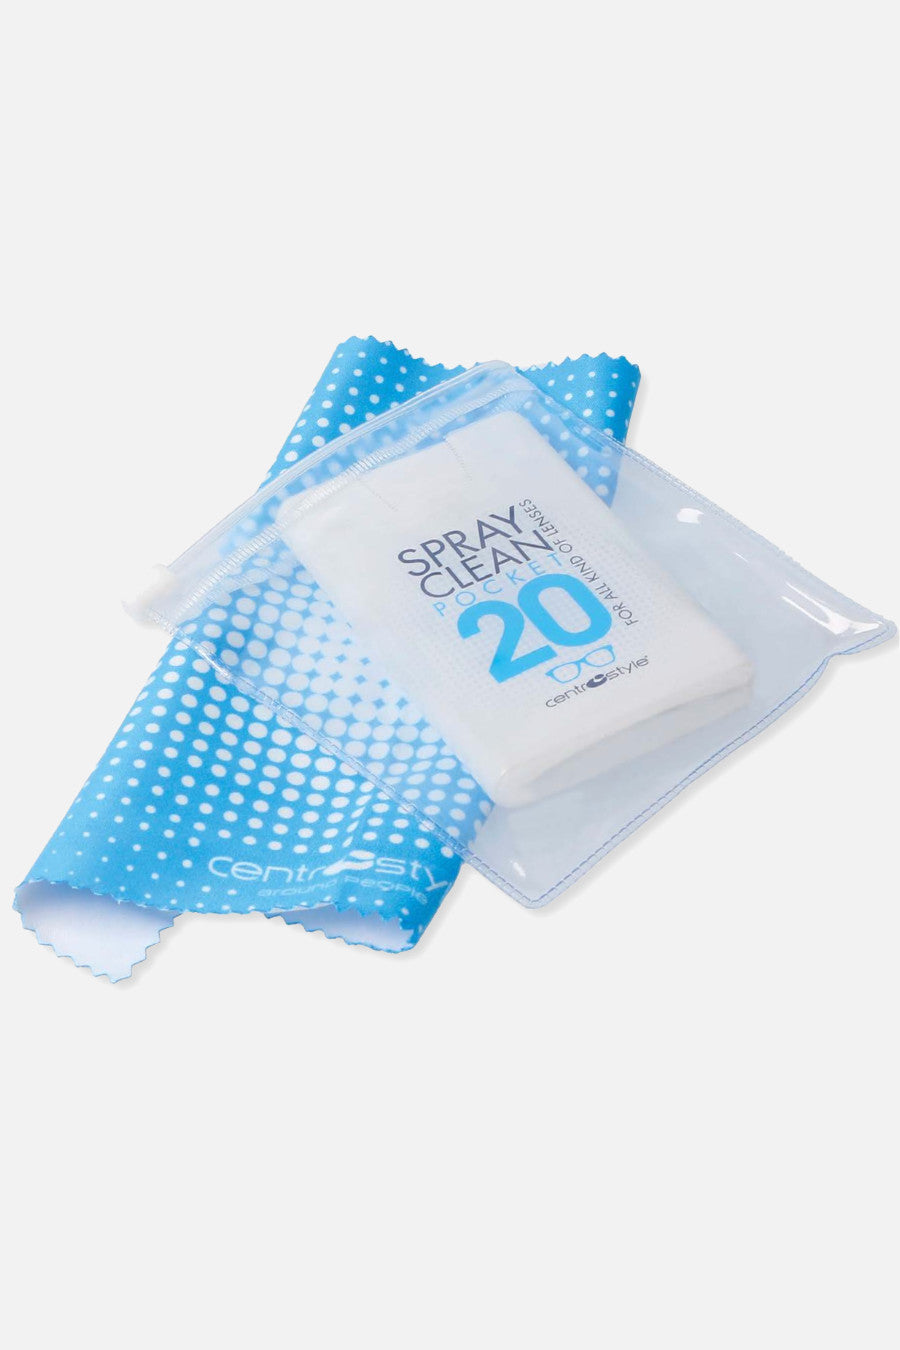 Spray Clean pocket 20 con panno in microfibra